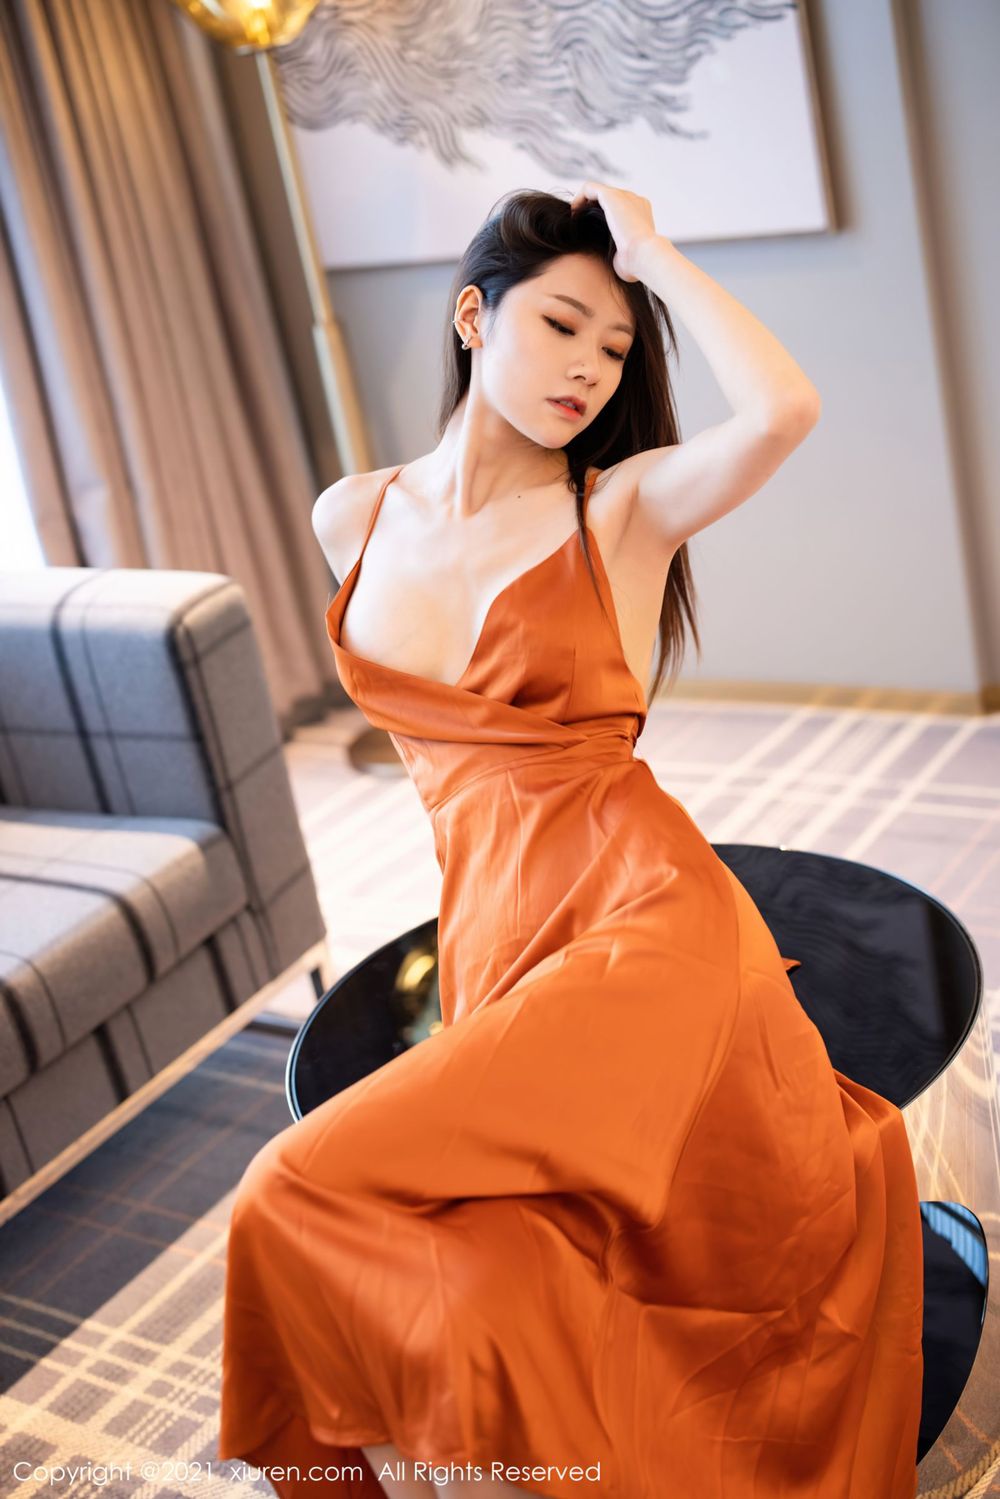 美女模特方子萱橙色深V吊裙高挑身材私房系列写真